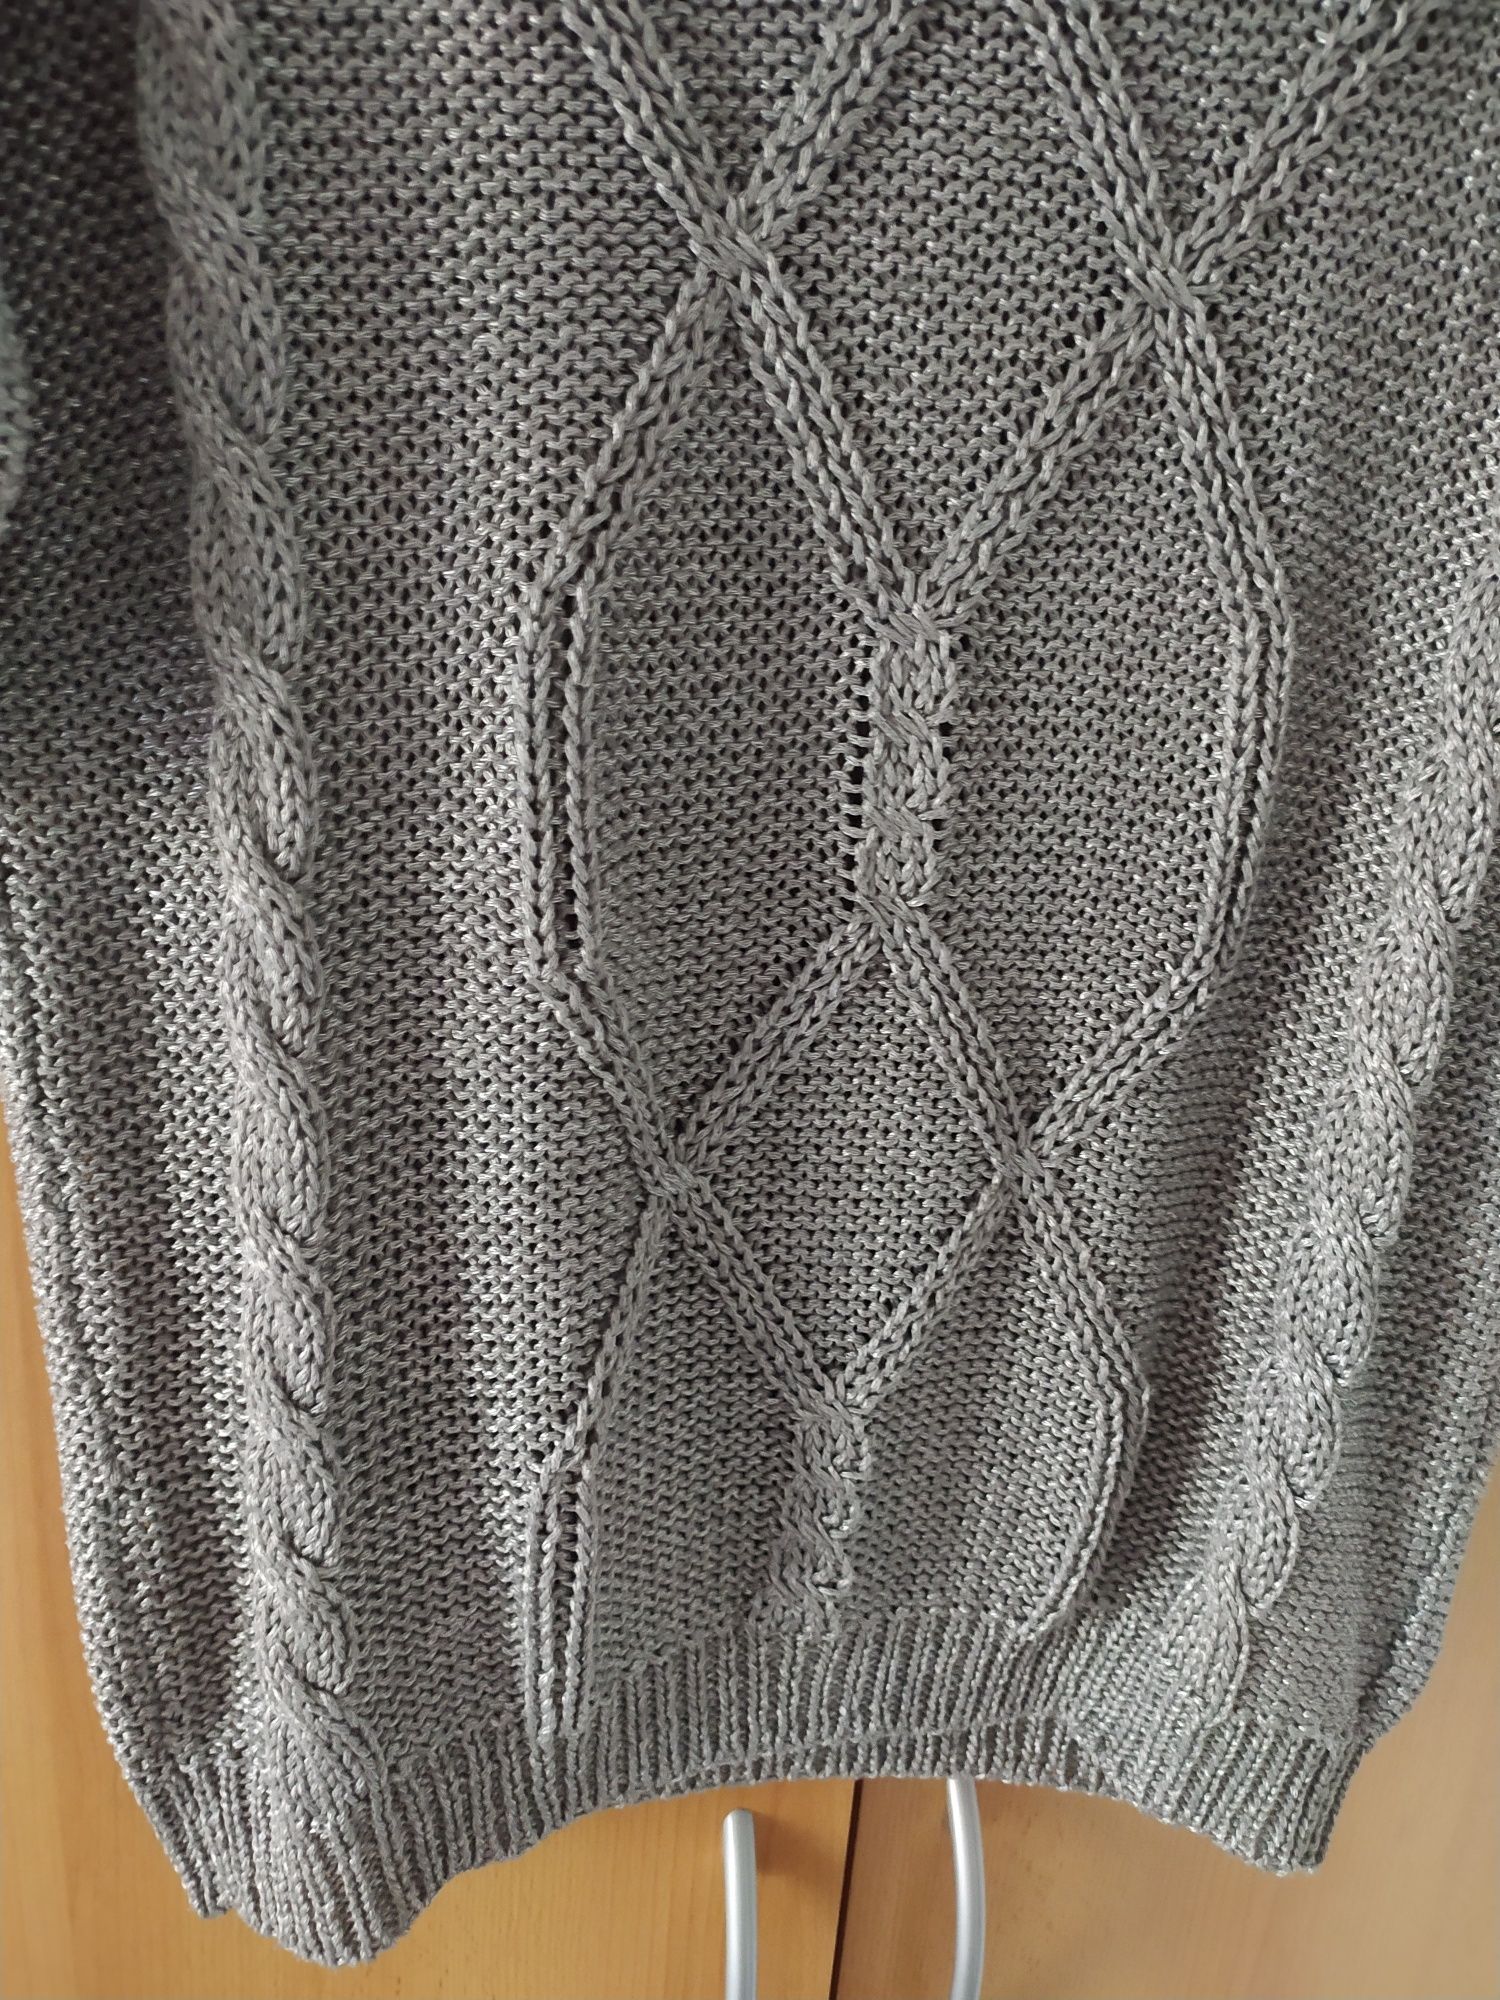 Sweterek reserved damski szary srebrny M 38